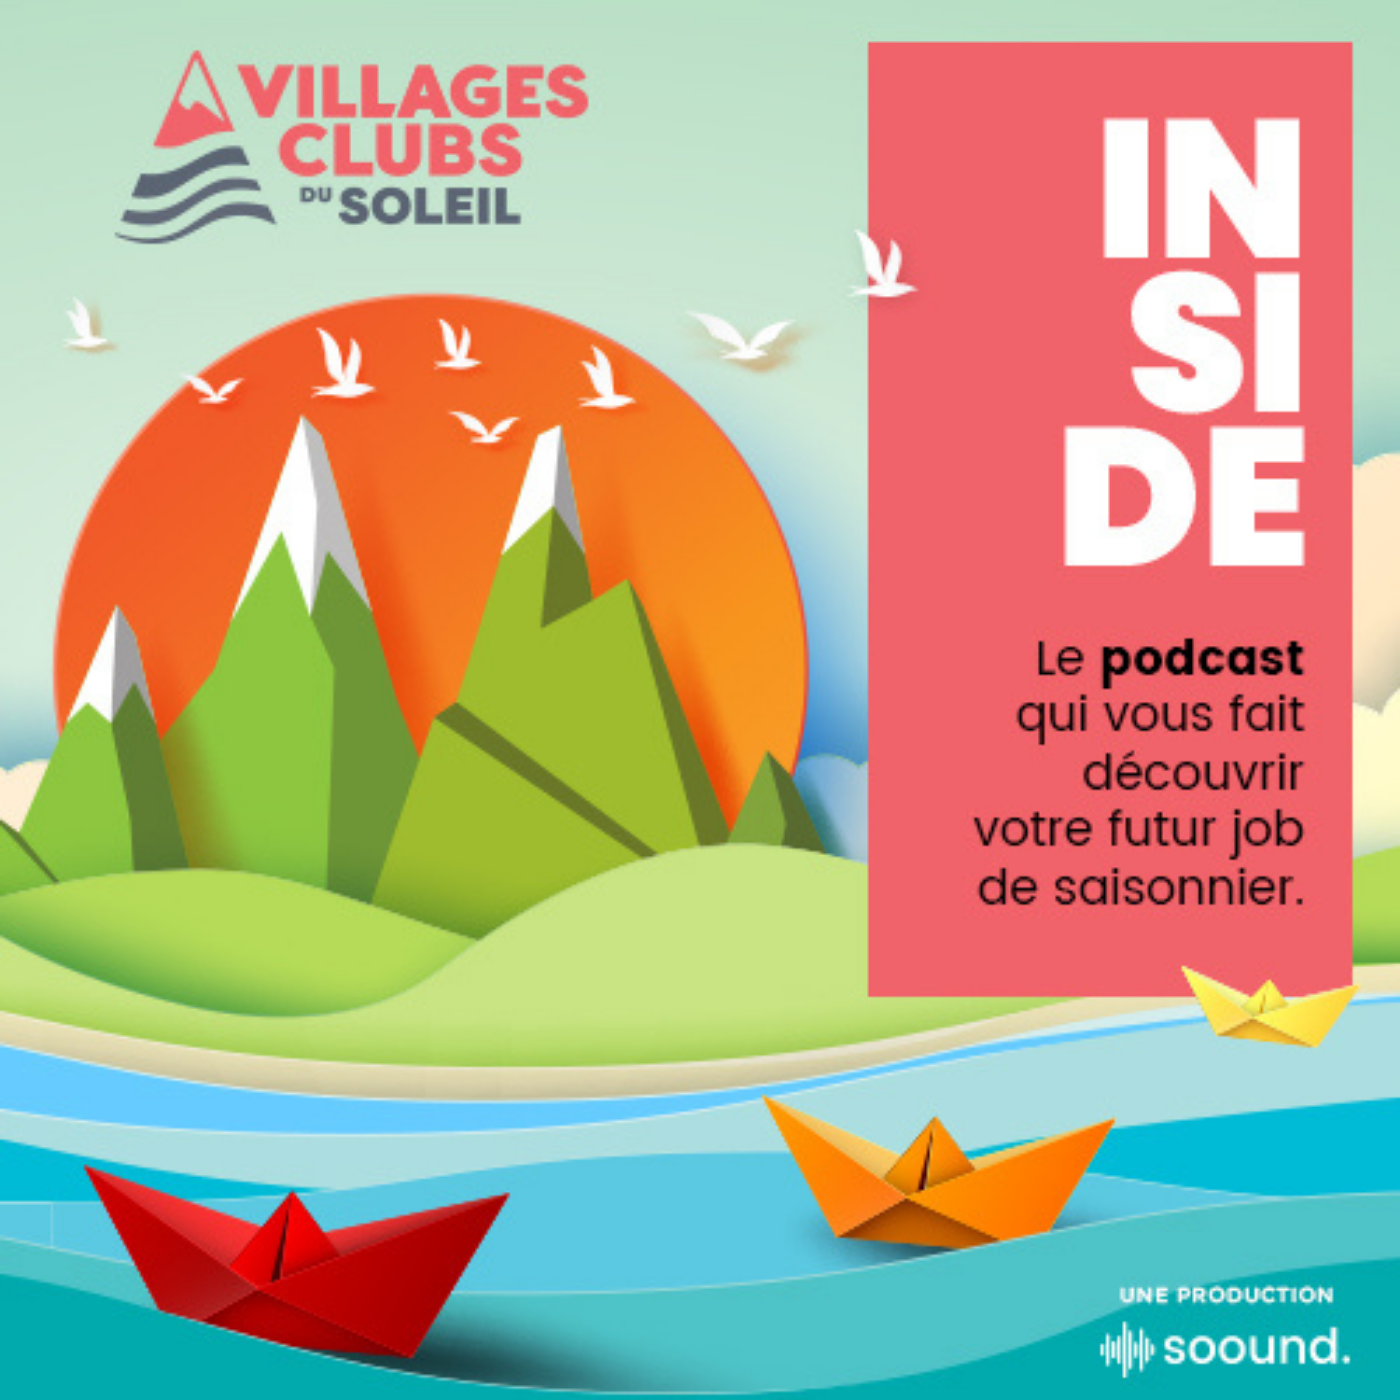 Artwork for podcast Inside Villages Clubs du Soleil